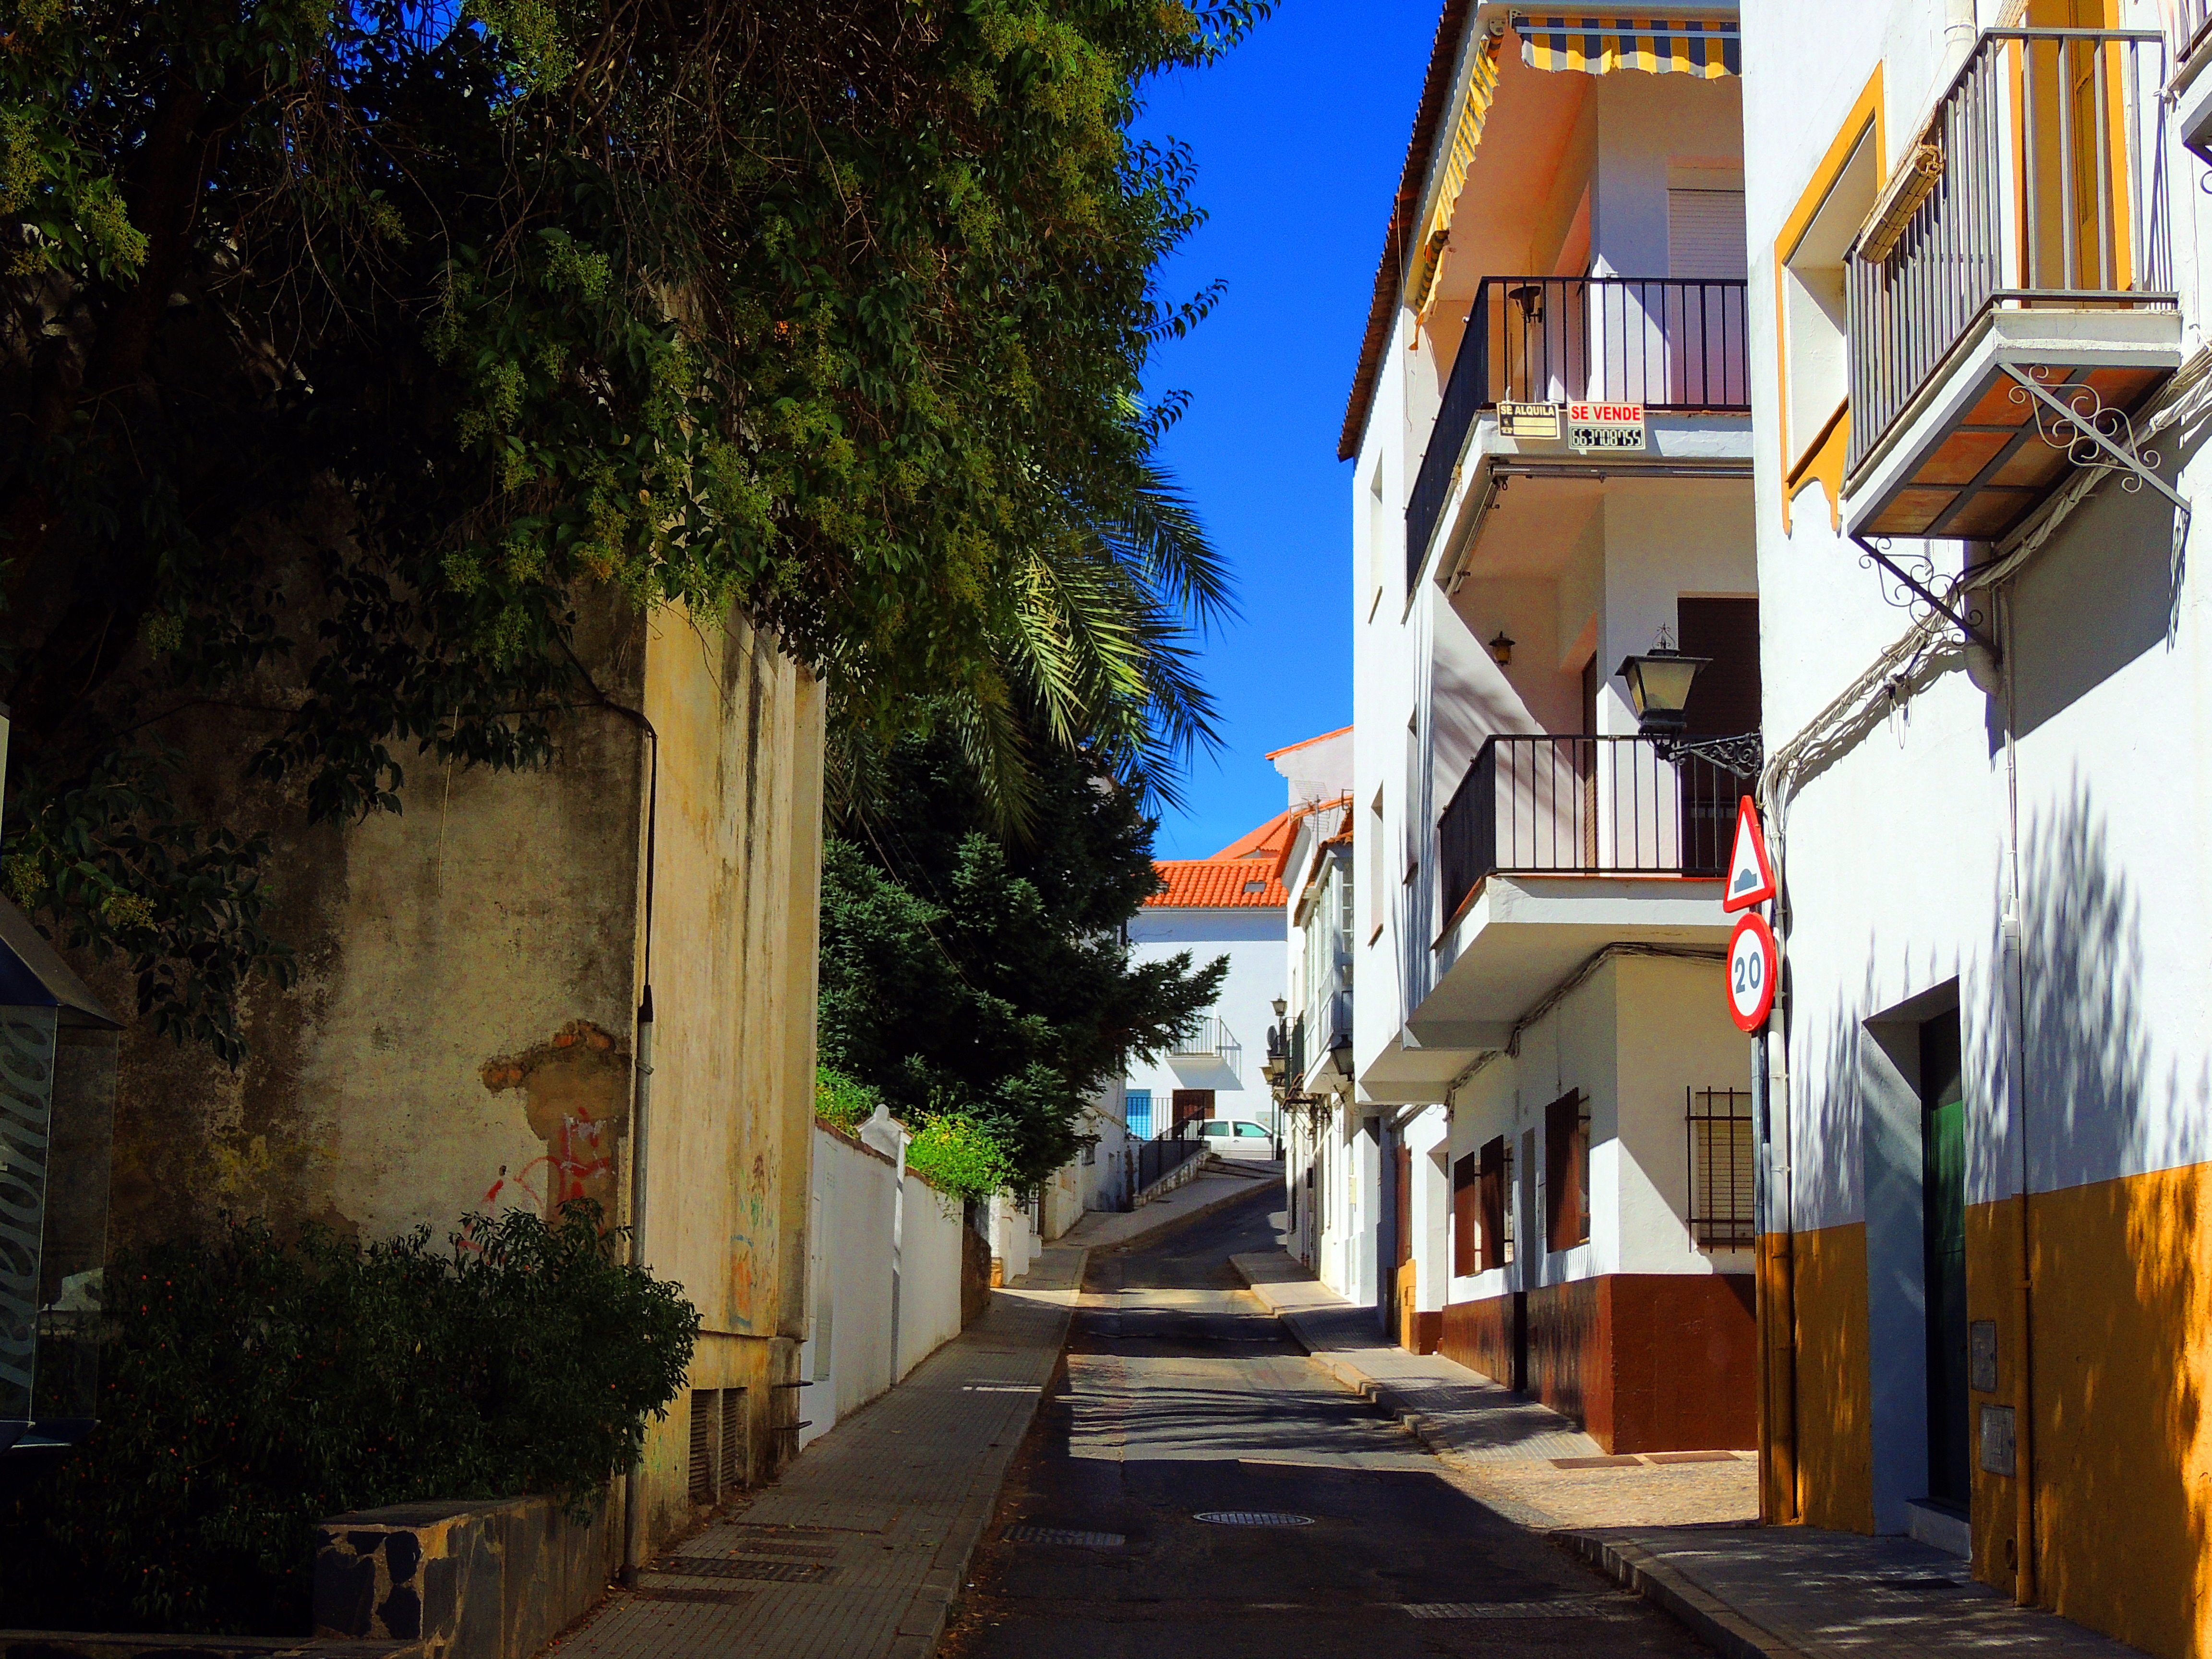 Foto: Calle Cuesta del Olivo - Aracena (Huelva), España